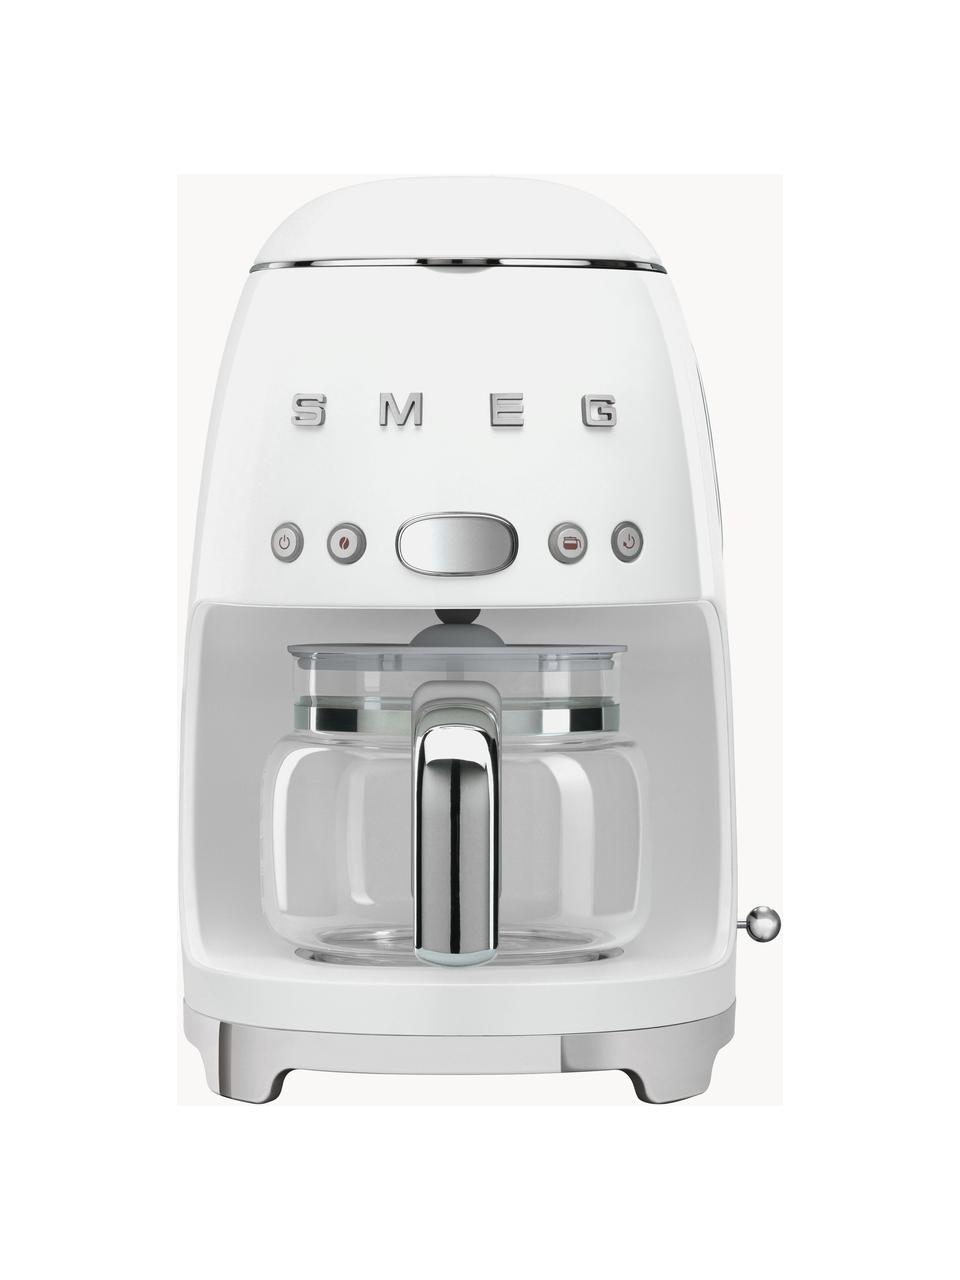 Filterkaffeemaschine 50's Style, Gehäuse: Metall, lackiert, Kanne: Glas, Weiß, glänzend, B 26 x H 36 cm